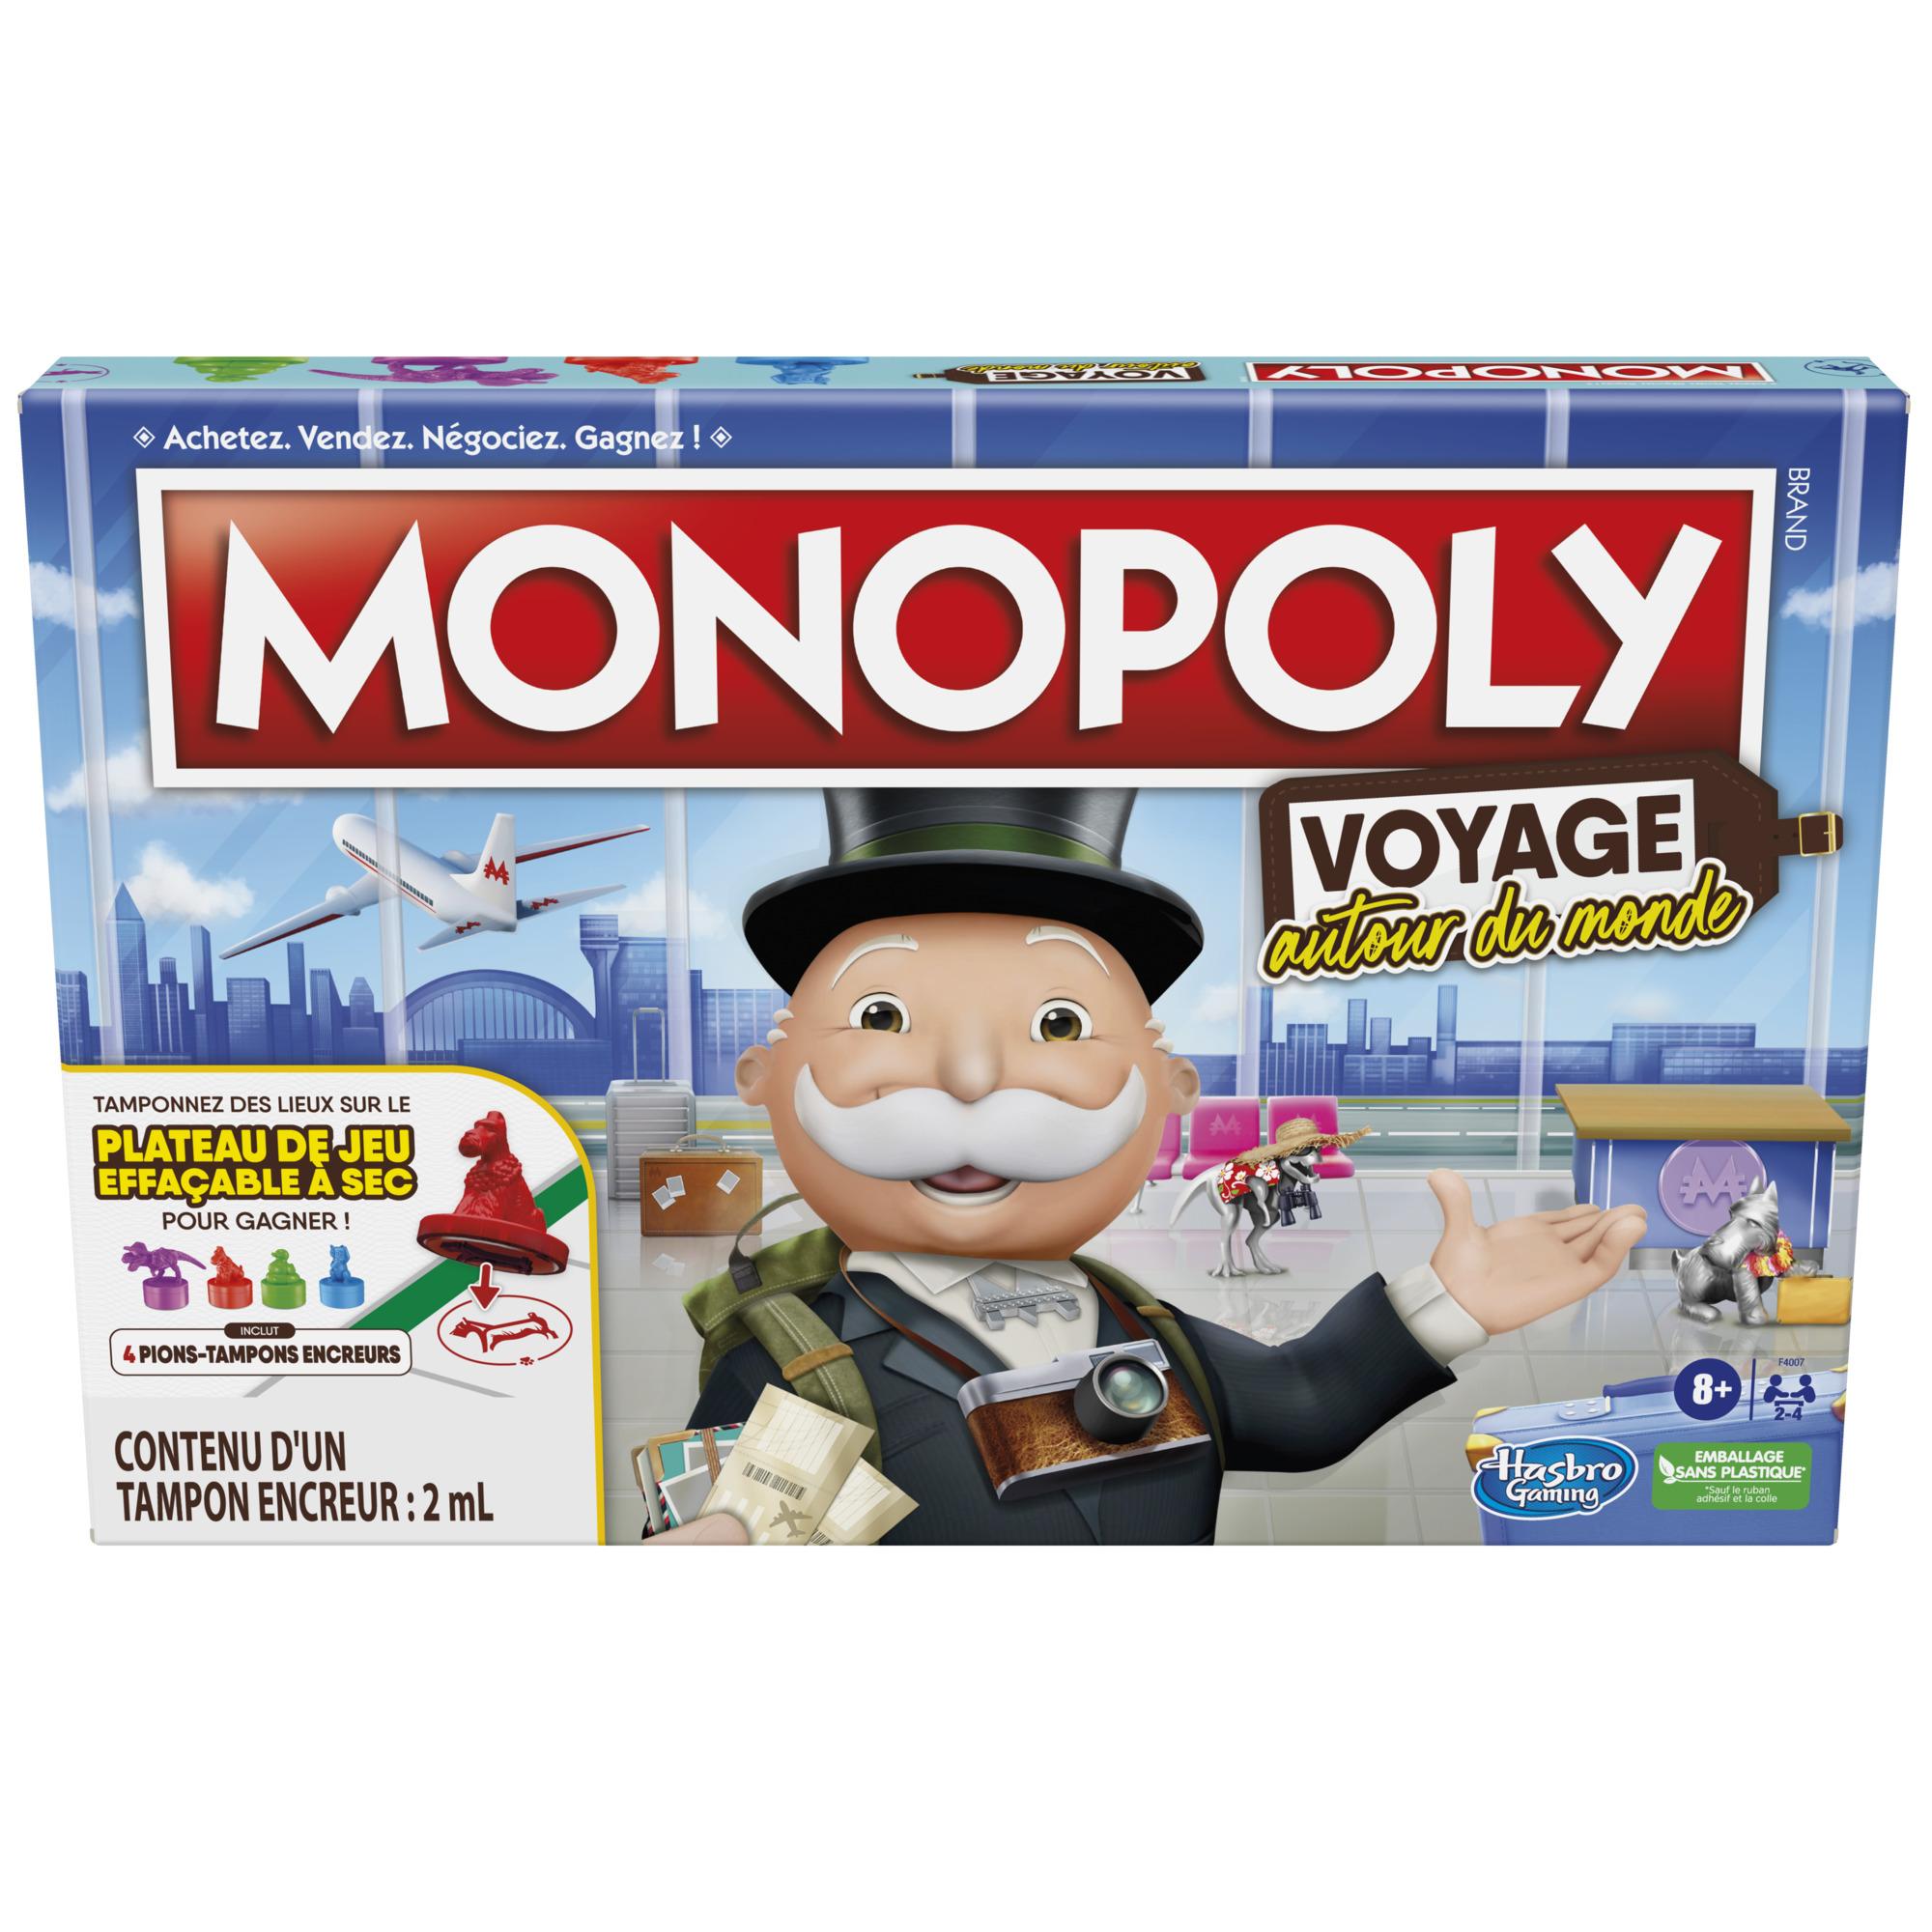 Les règles du Monopoly - Comment jouer au Monopoly ?